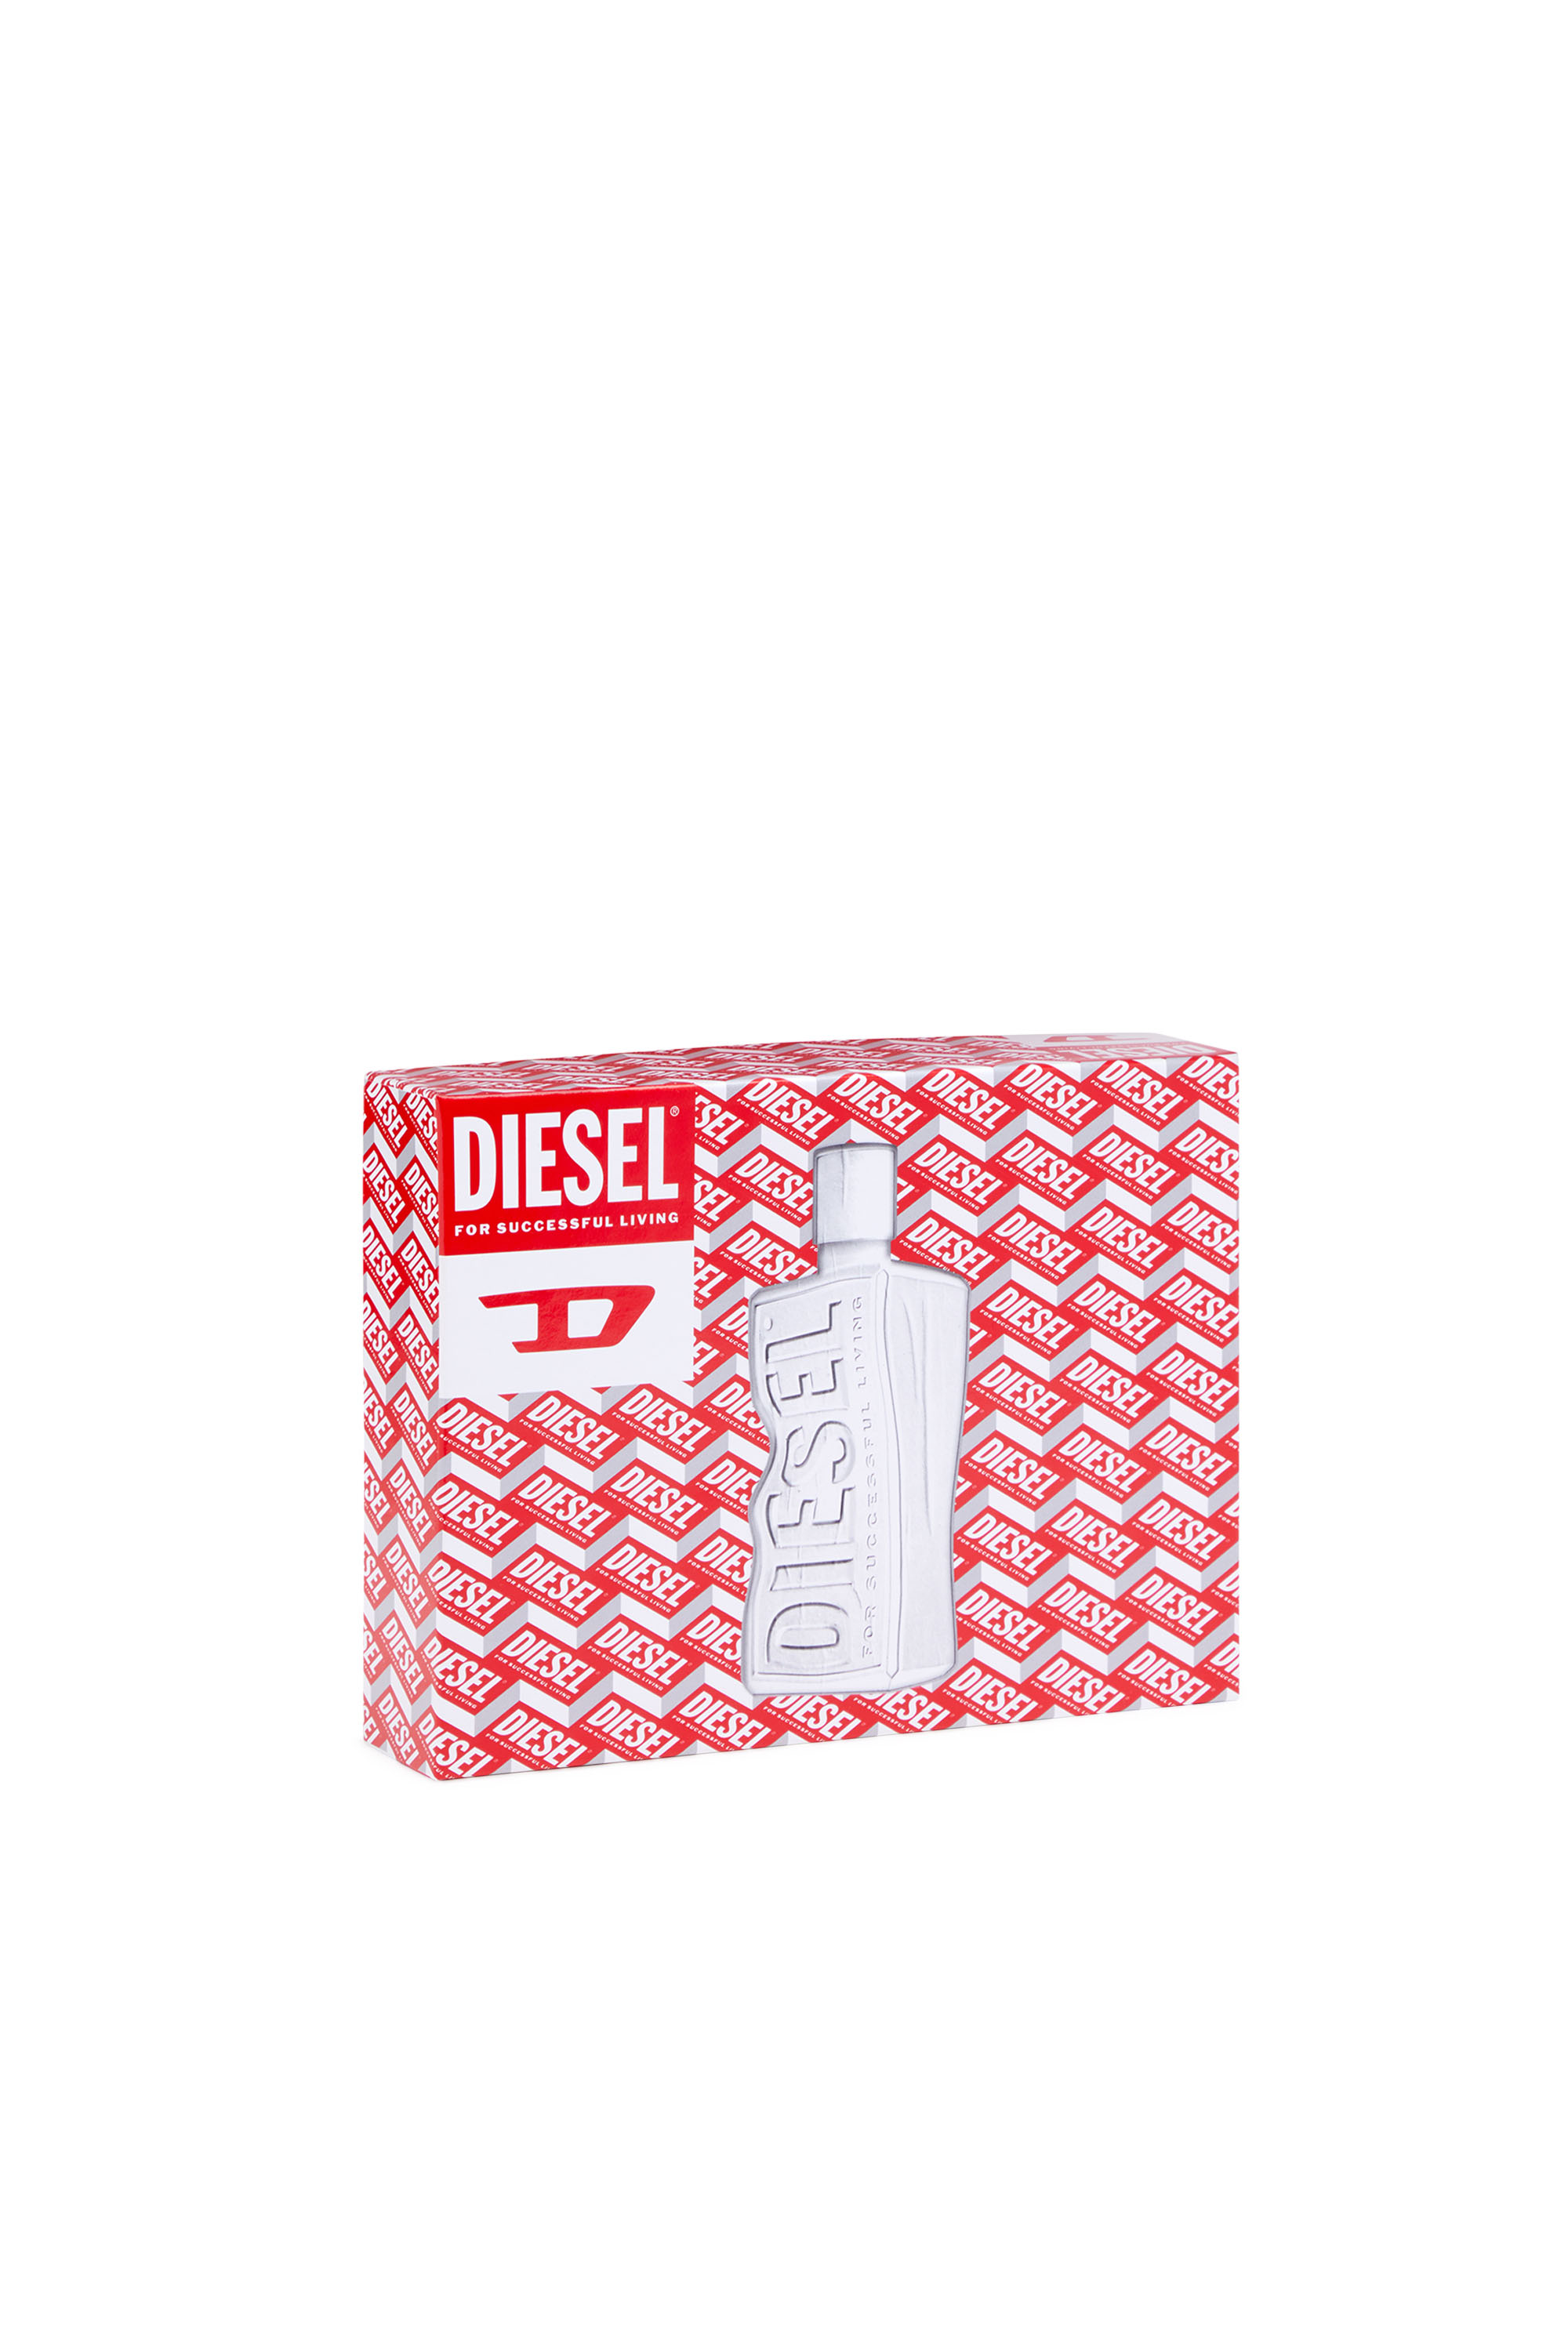 Diesel - D 50ML GIFT SET, White - Image 4